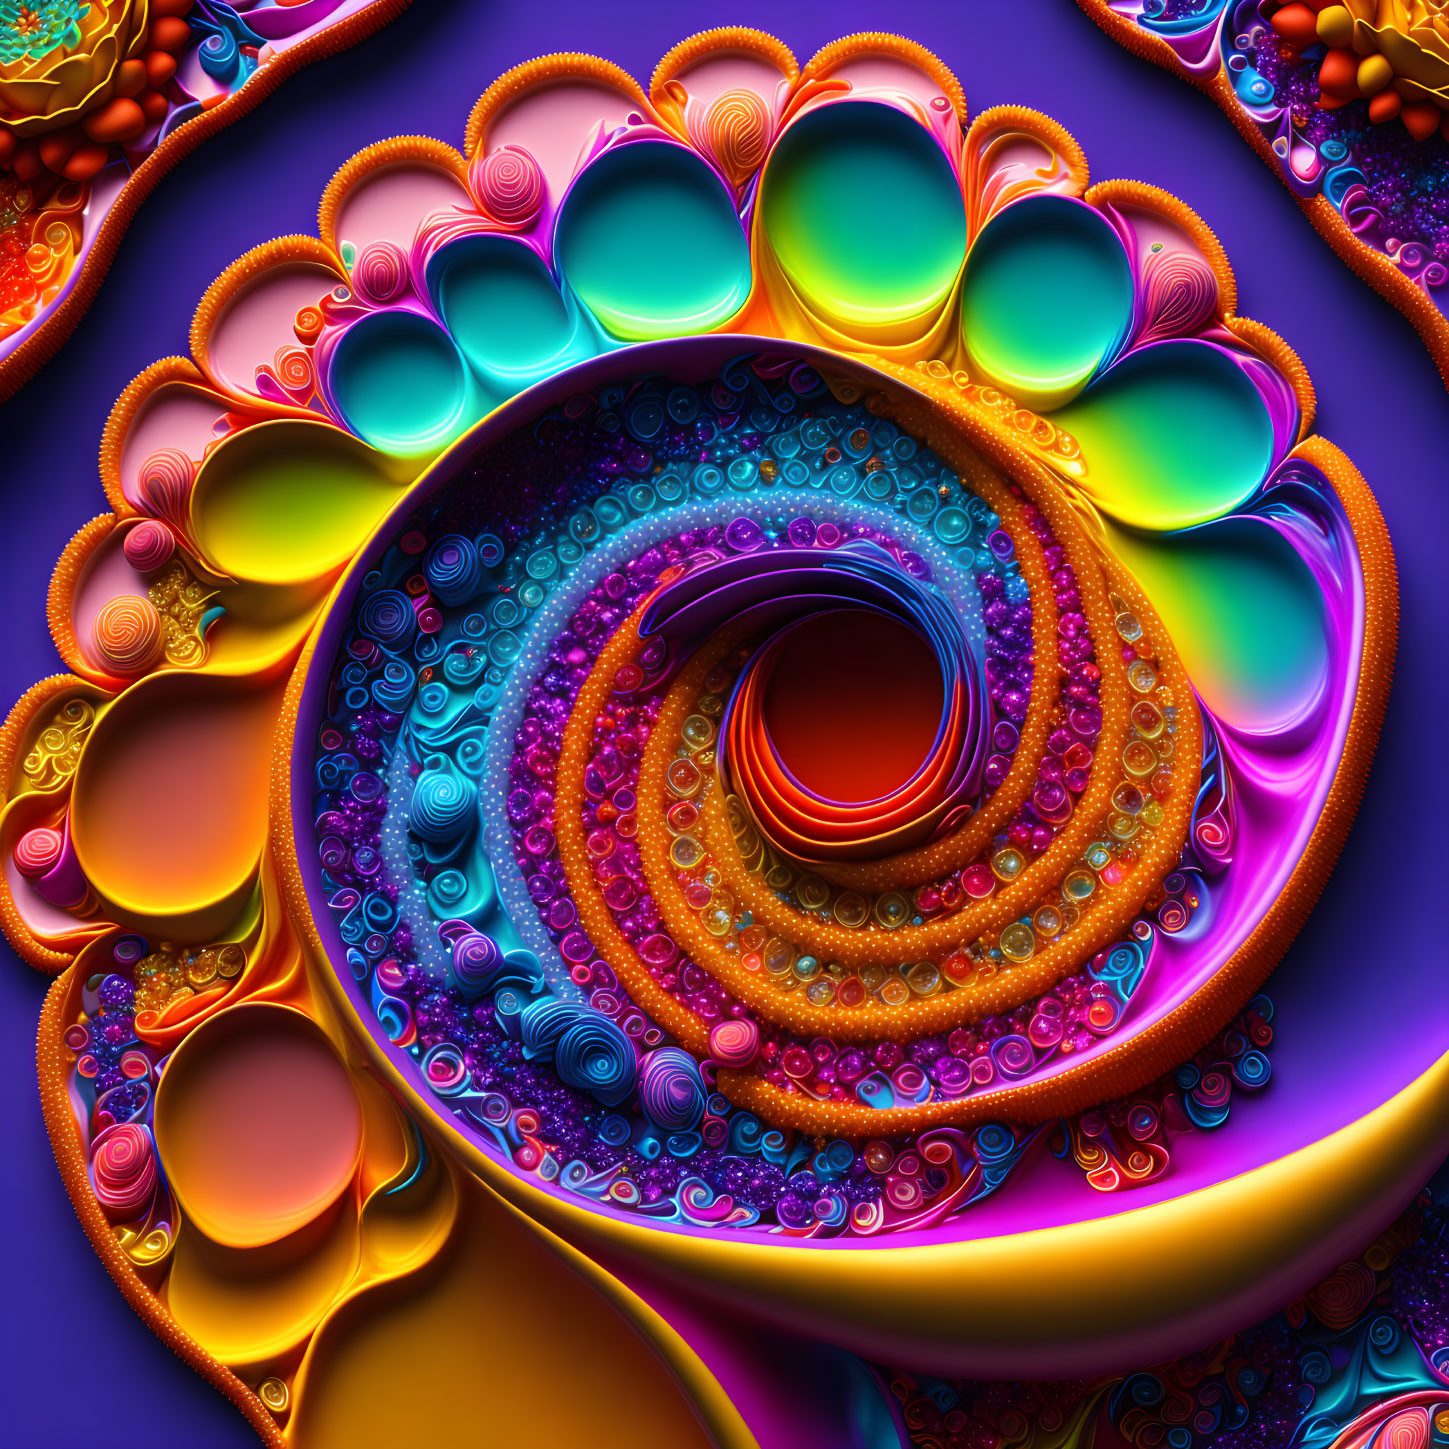 Magic spiral